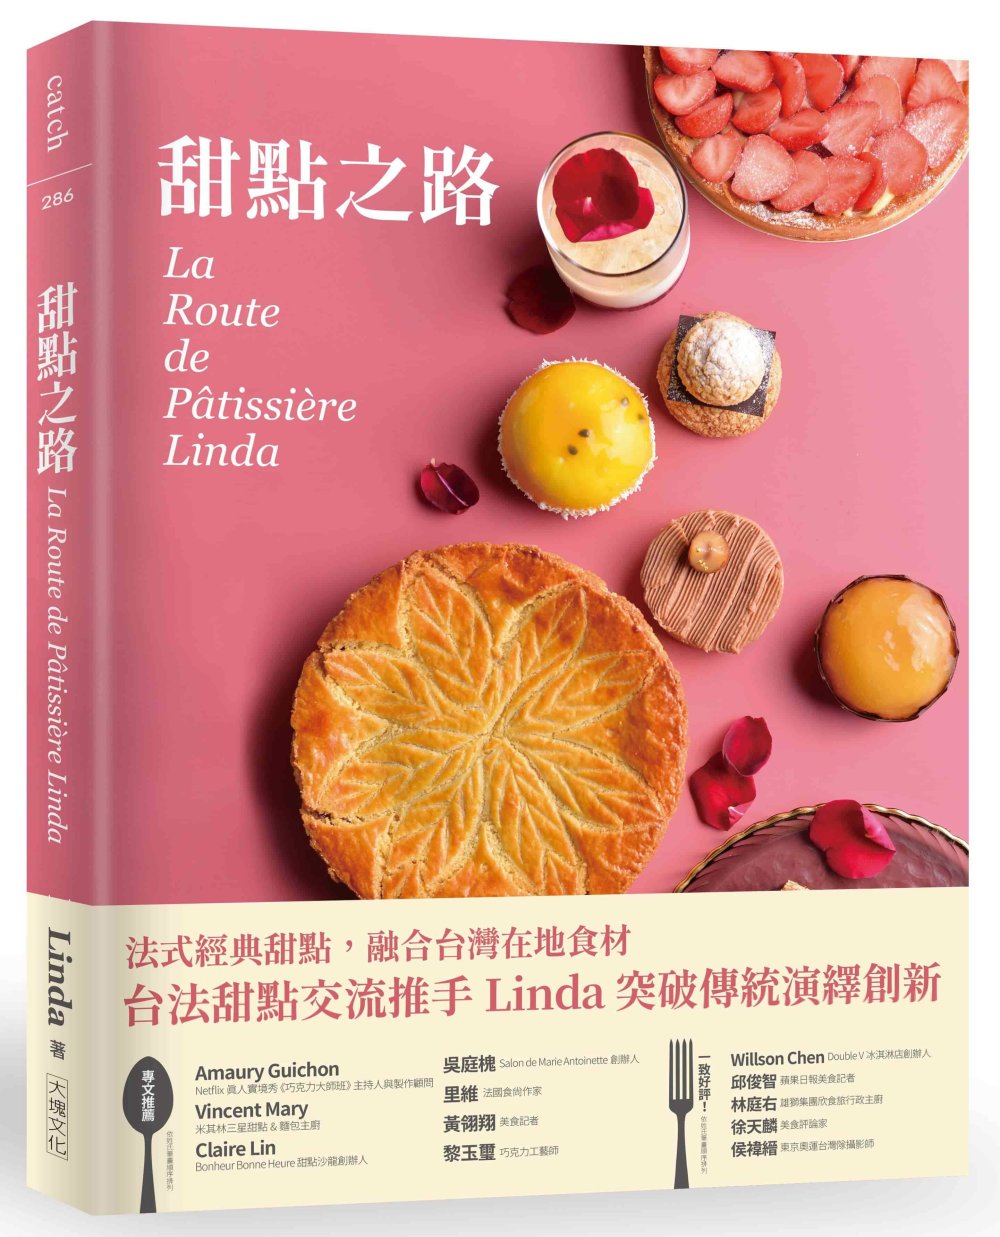 甜點之路 La Route de Pâtissière Linda：跟著台法國際甜點交流推手 Linda， 一起感受法式甜點的美好!從經典、地方傳統到創新， 法式甜點在家也能輕鬆做。